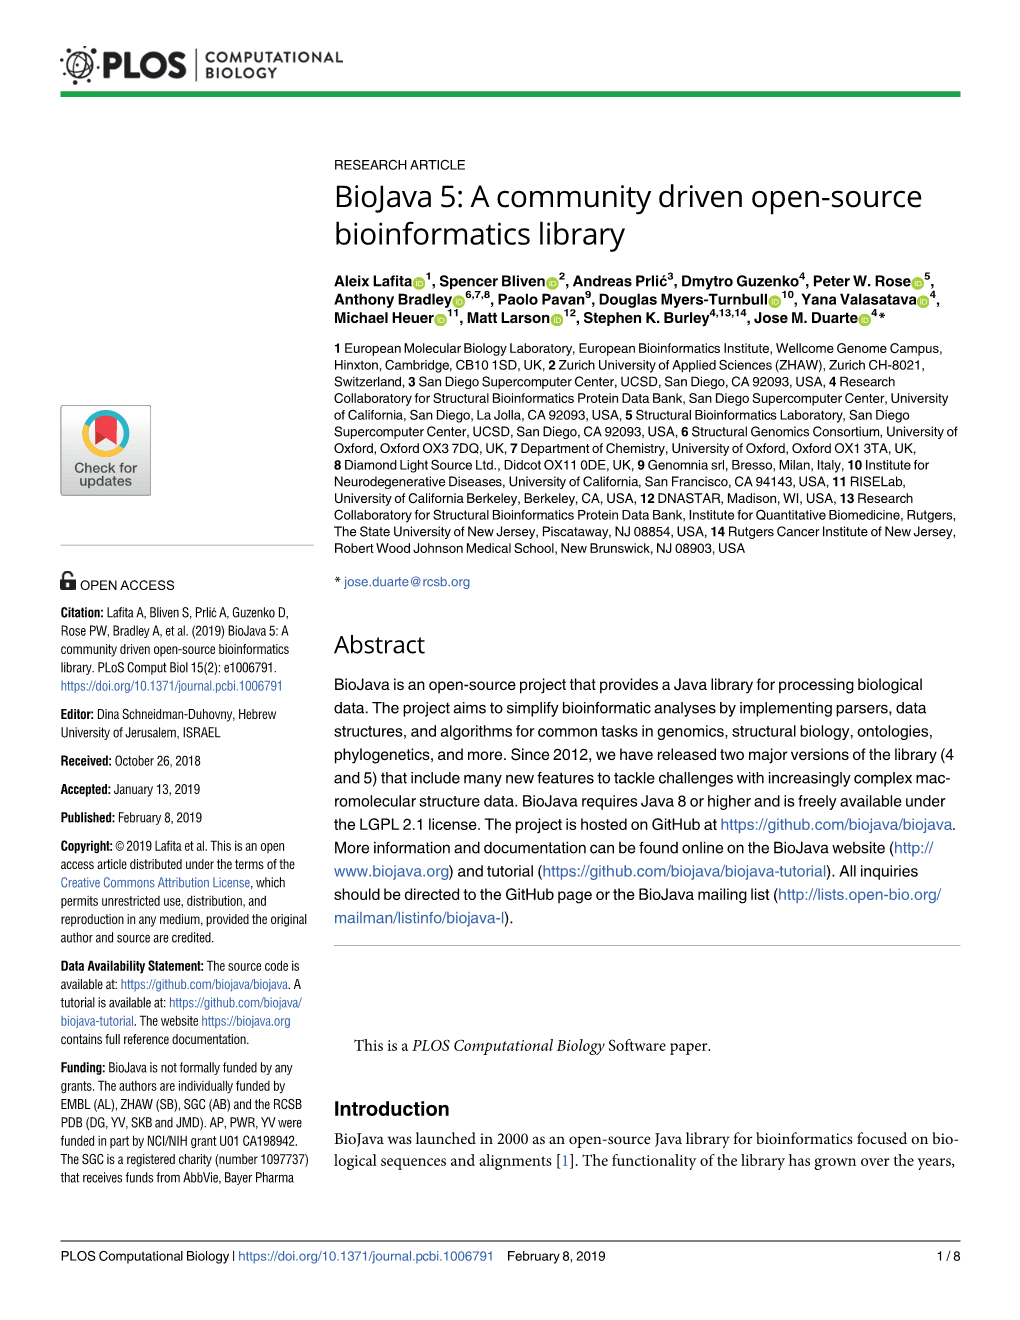 Biojava 5: a Community Driven Open-Source Bioinformatics Library